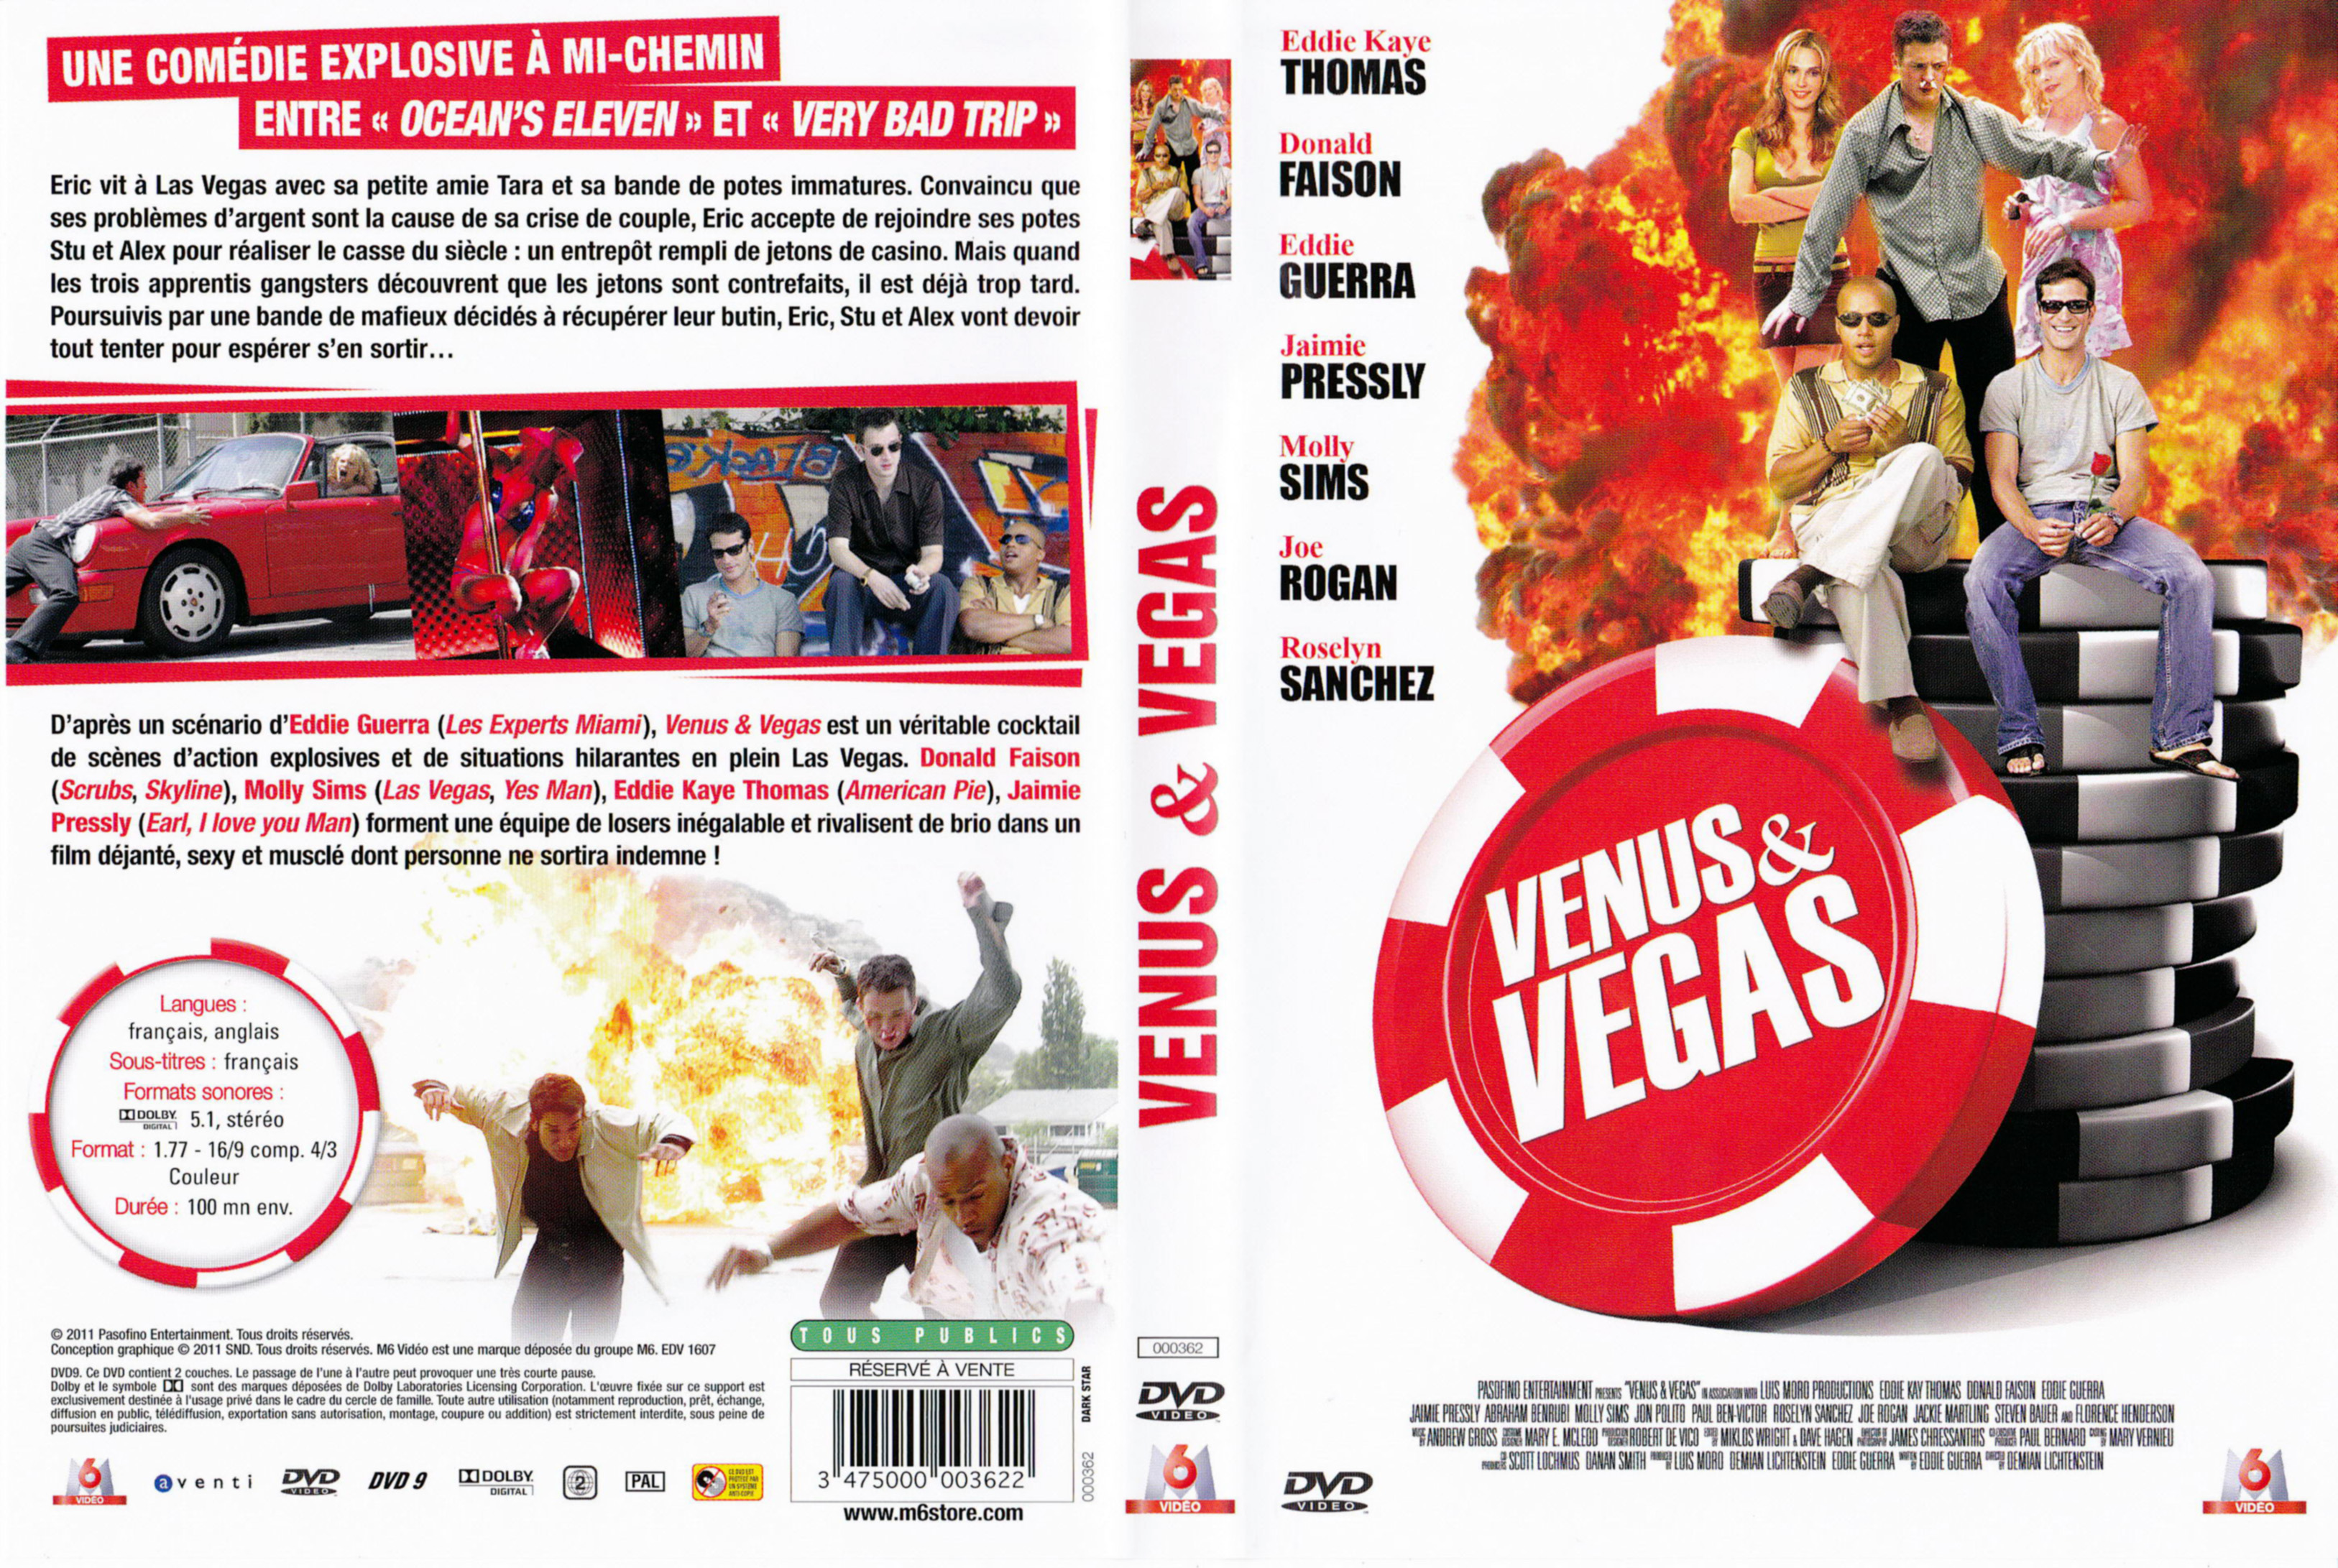 Jaquette DVD Venus & vegas